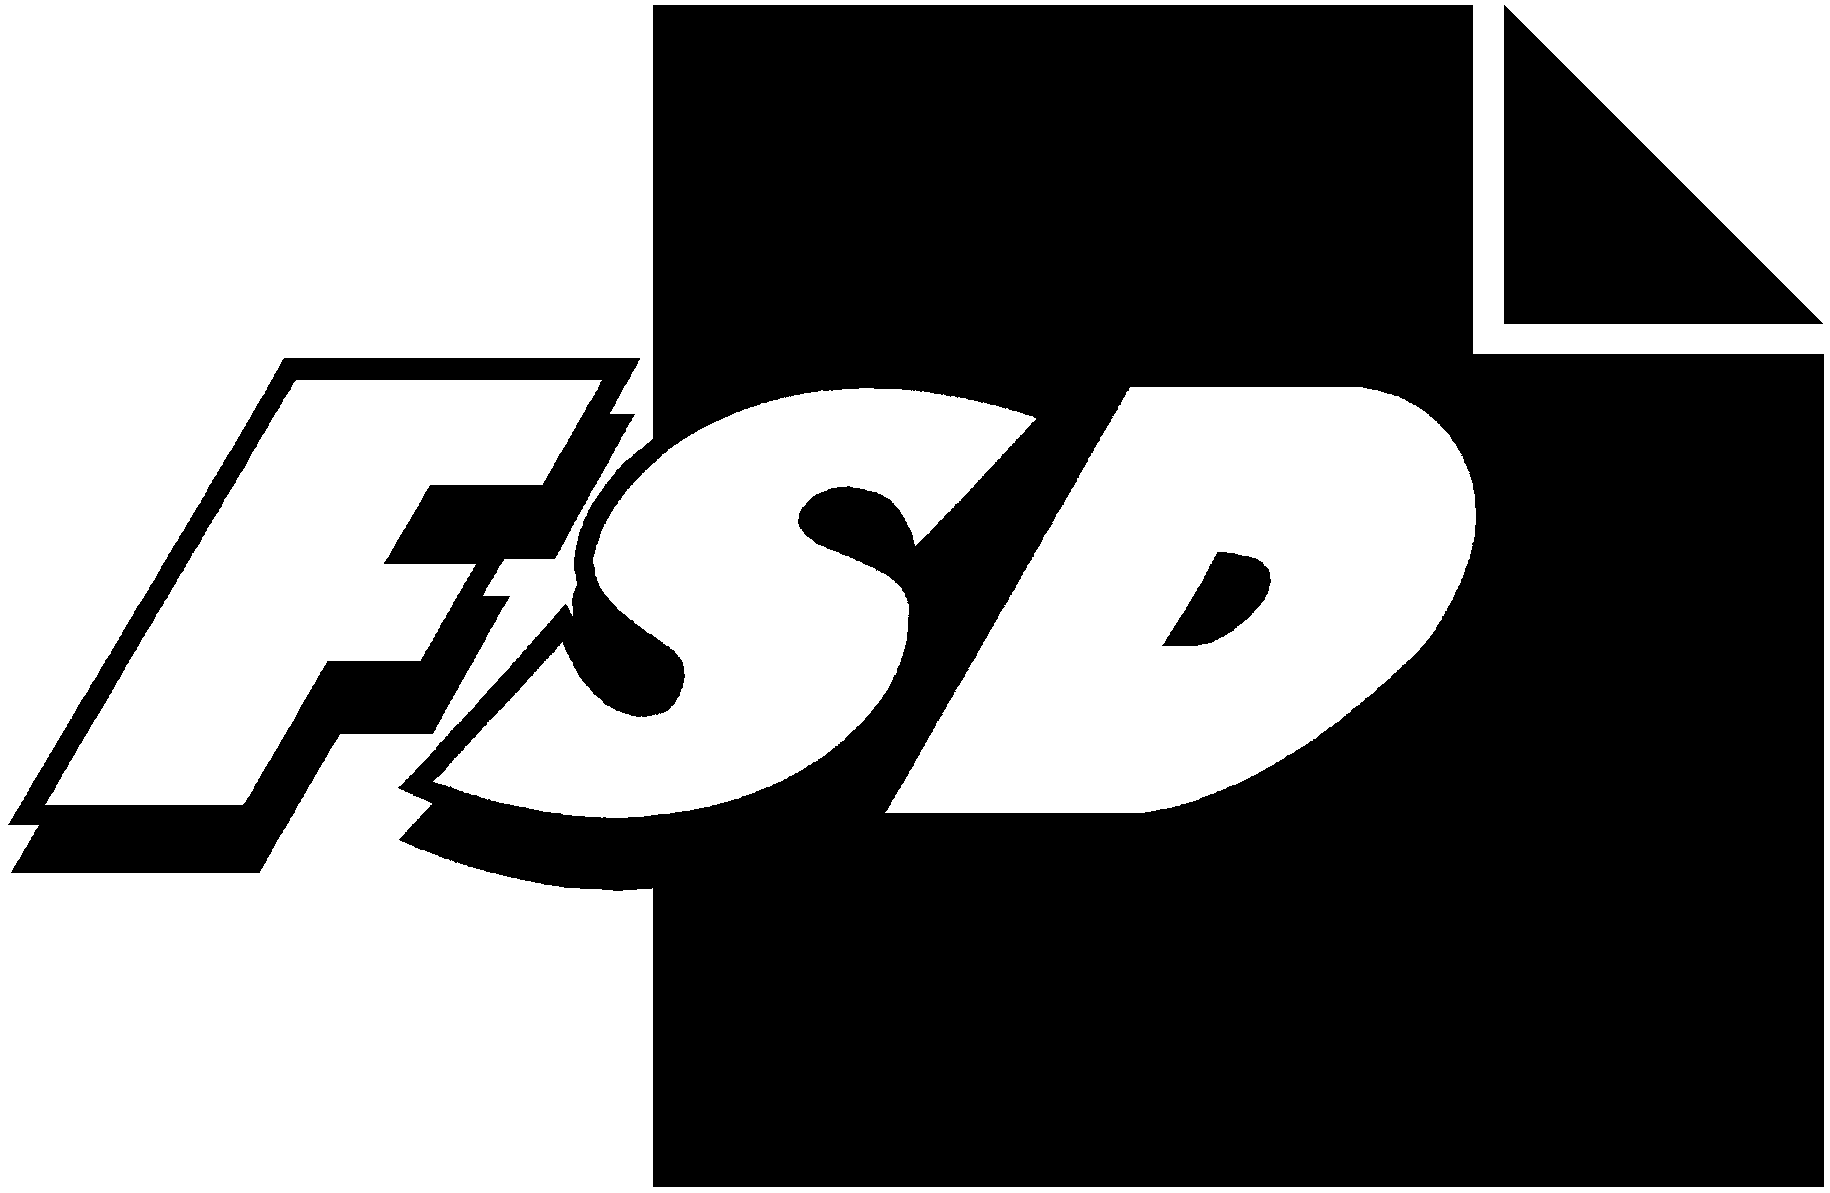 FSD2078 EVAn kansallinen asennetutkimus 2004